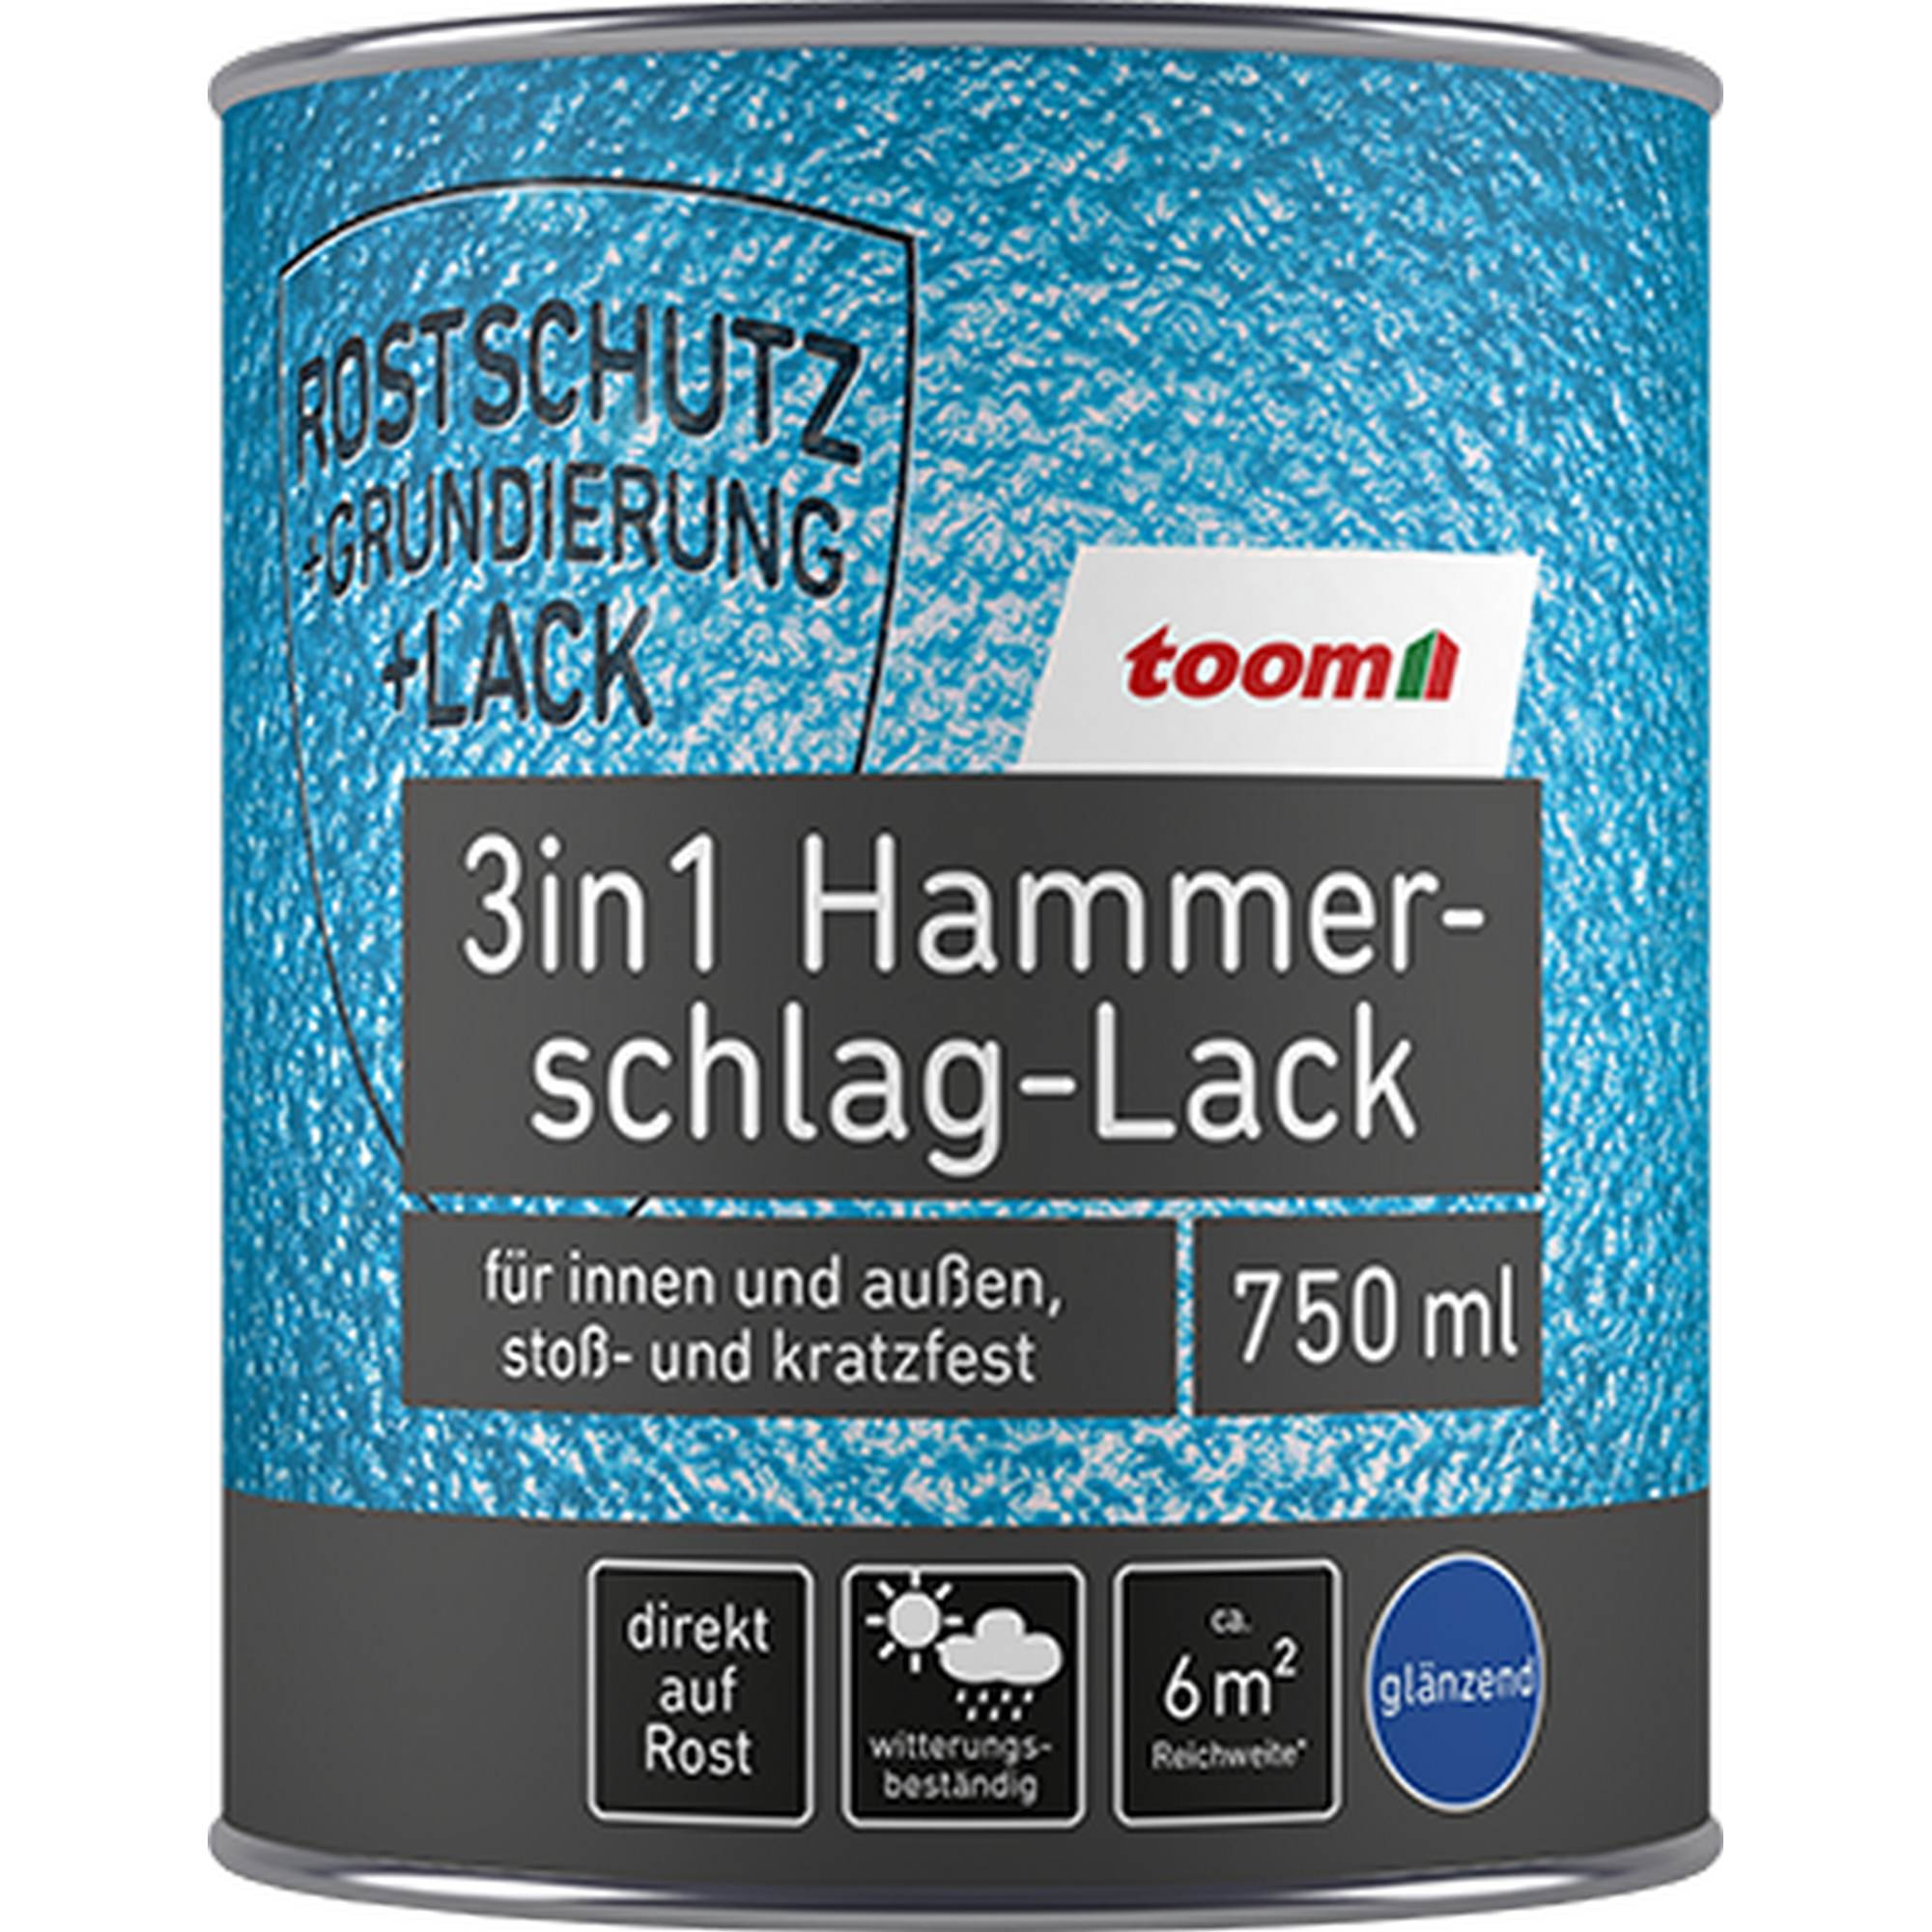 Hammerschlag-Lack schwarz glänzend 750 ml + product picture